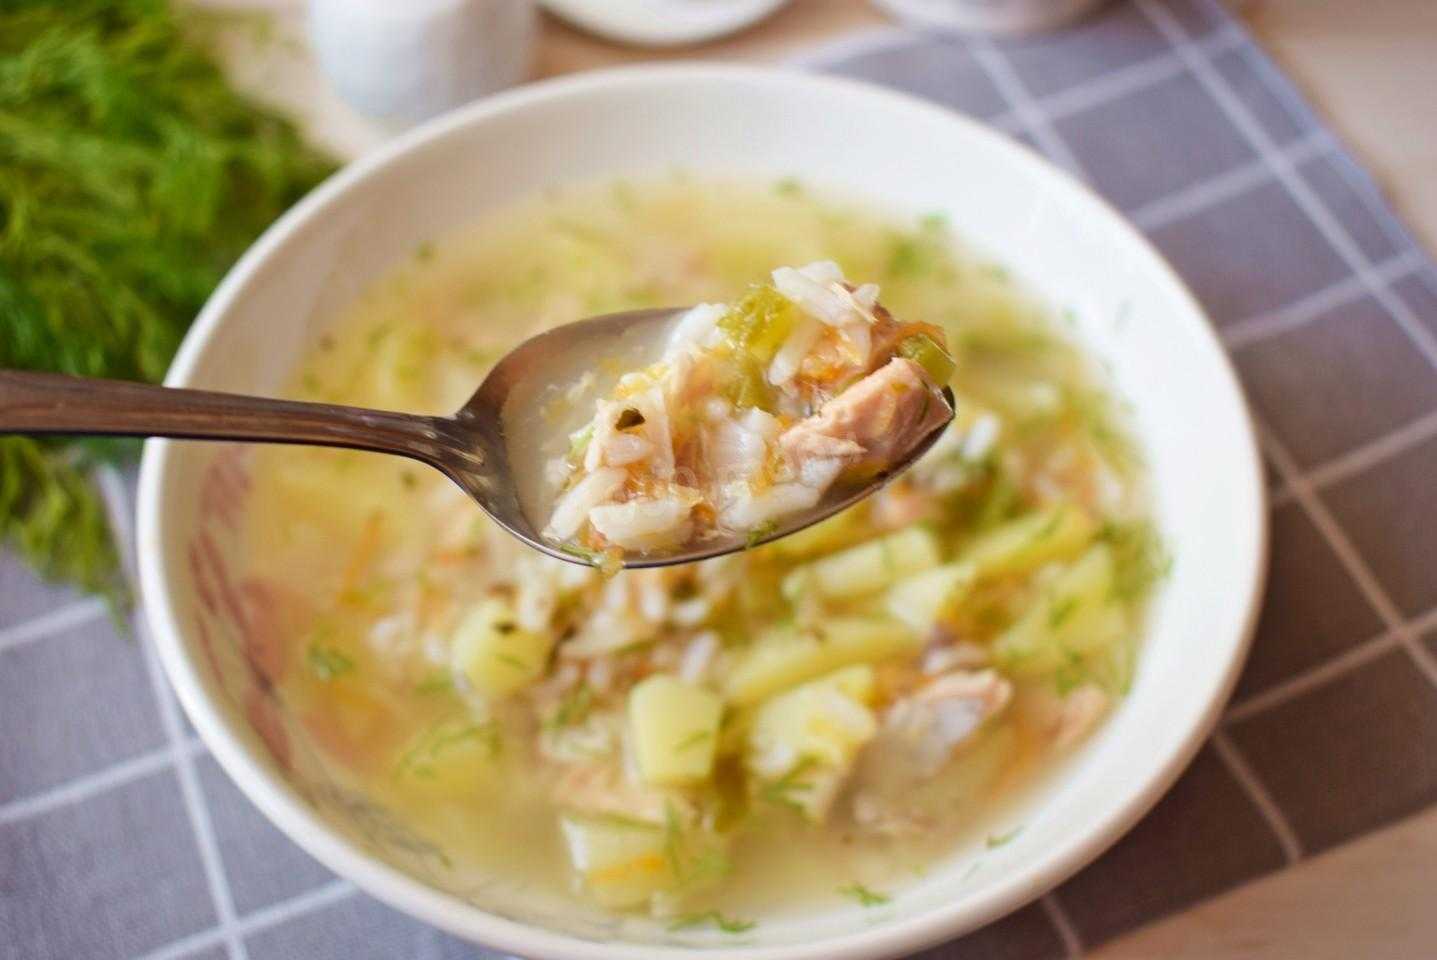 Рыбный суп из горбуши: пошаговый рецепт с фото быстро и просто от марины выходцевой и алены каменевой